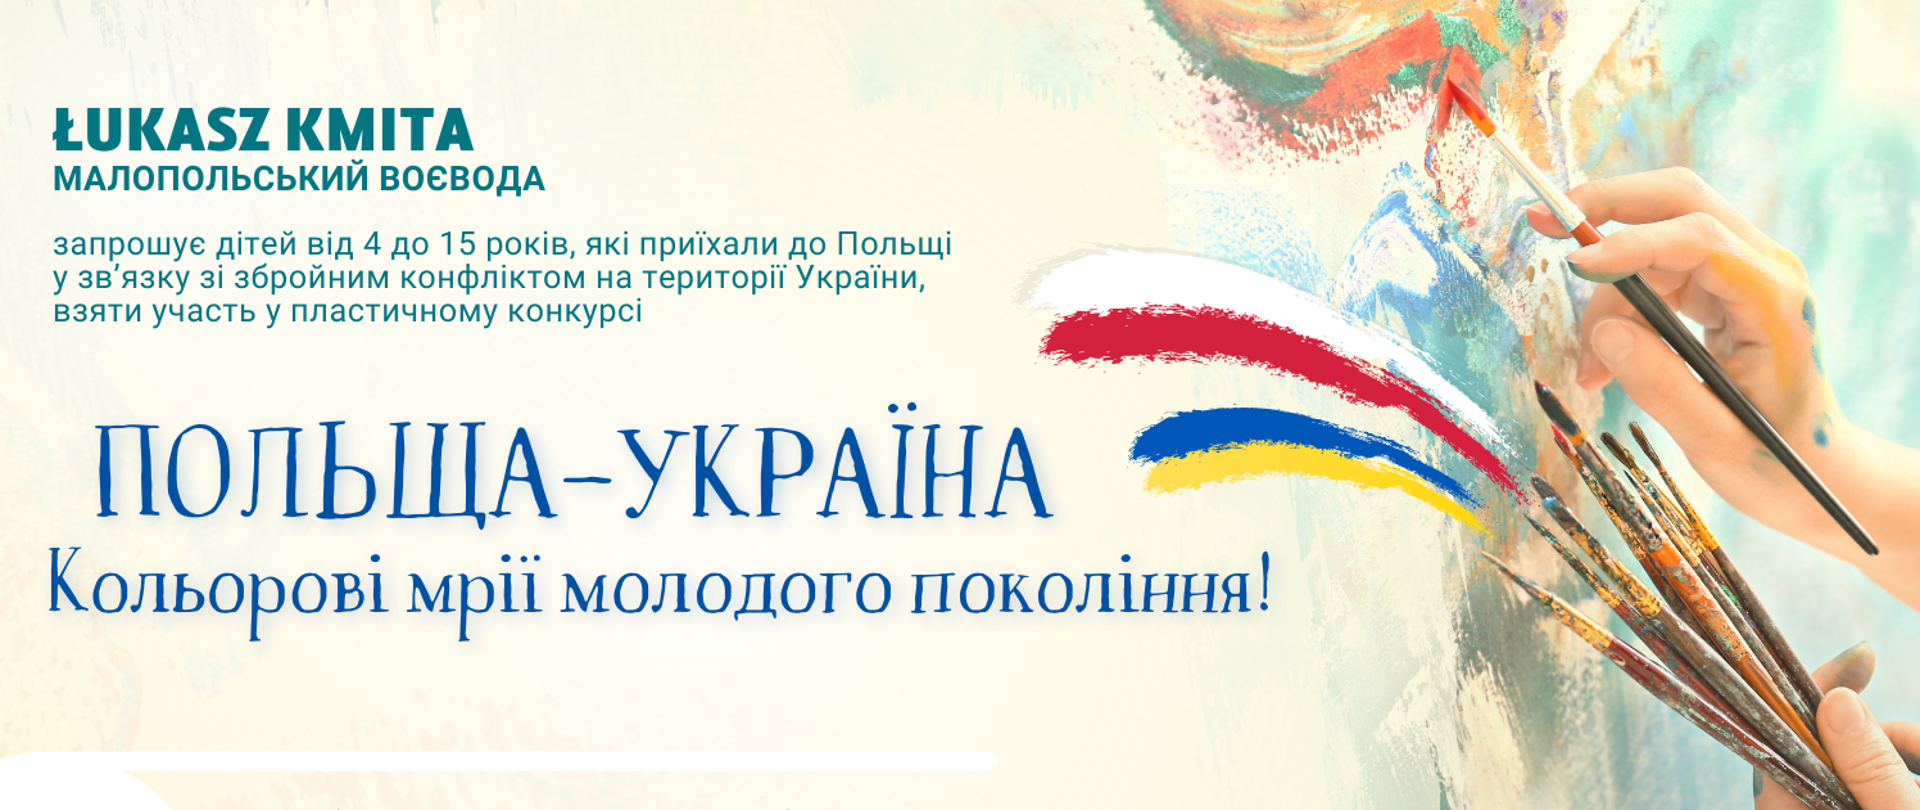 plakat informacyjny konkursu w języku ukraińskim